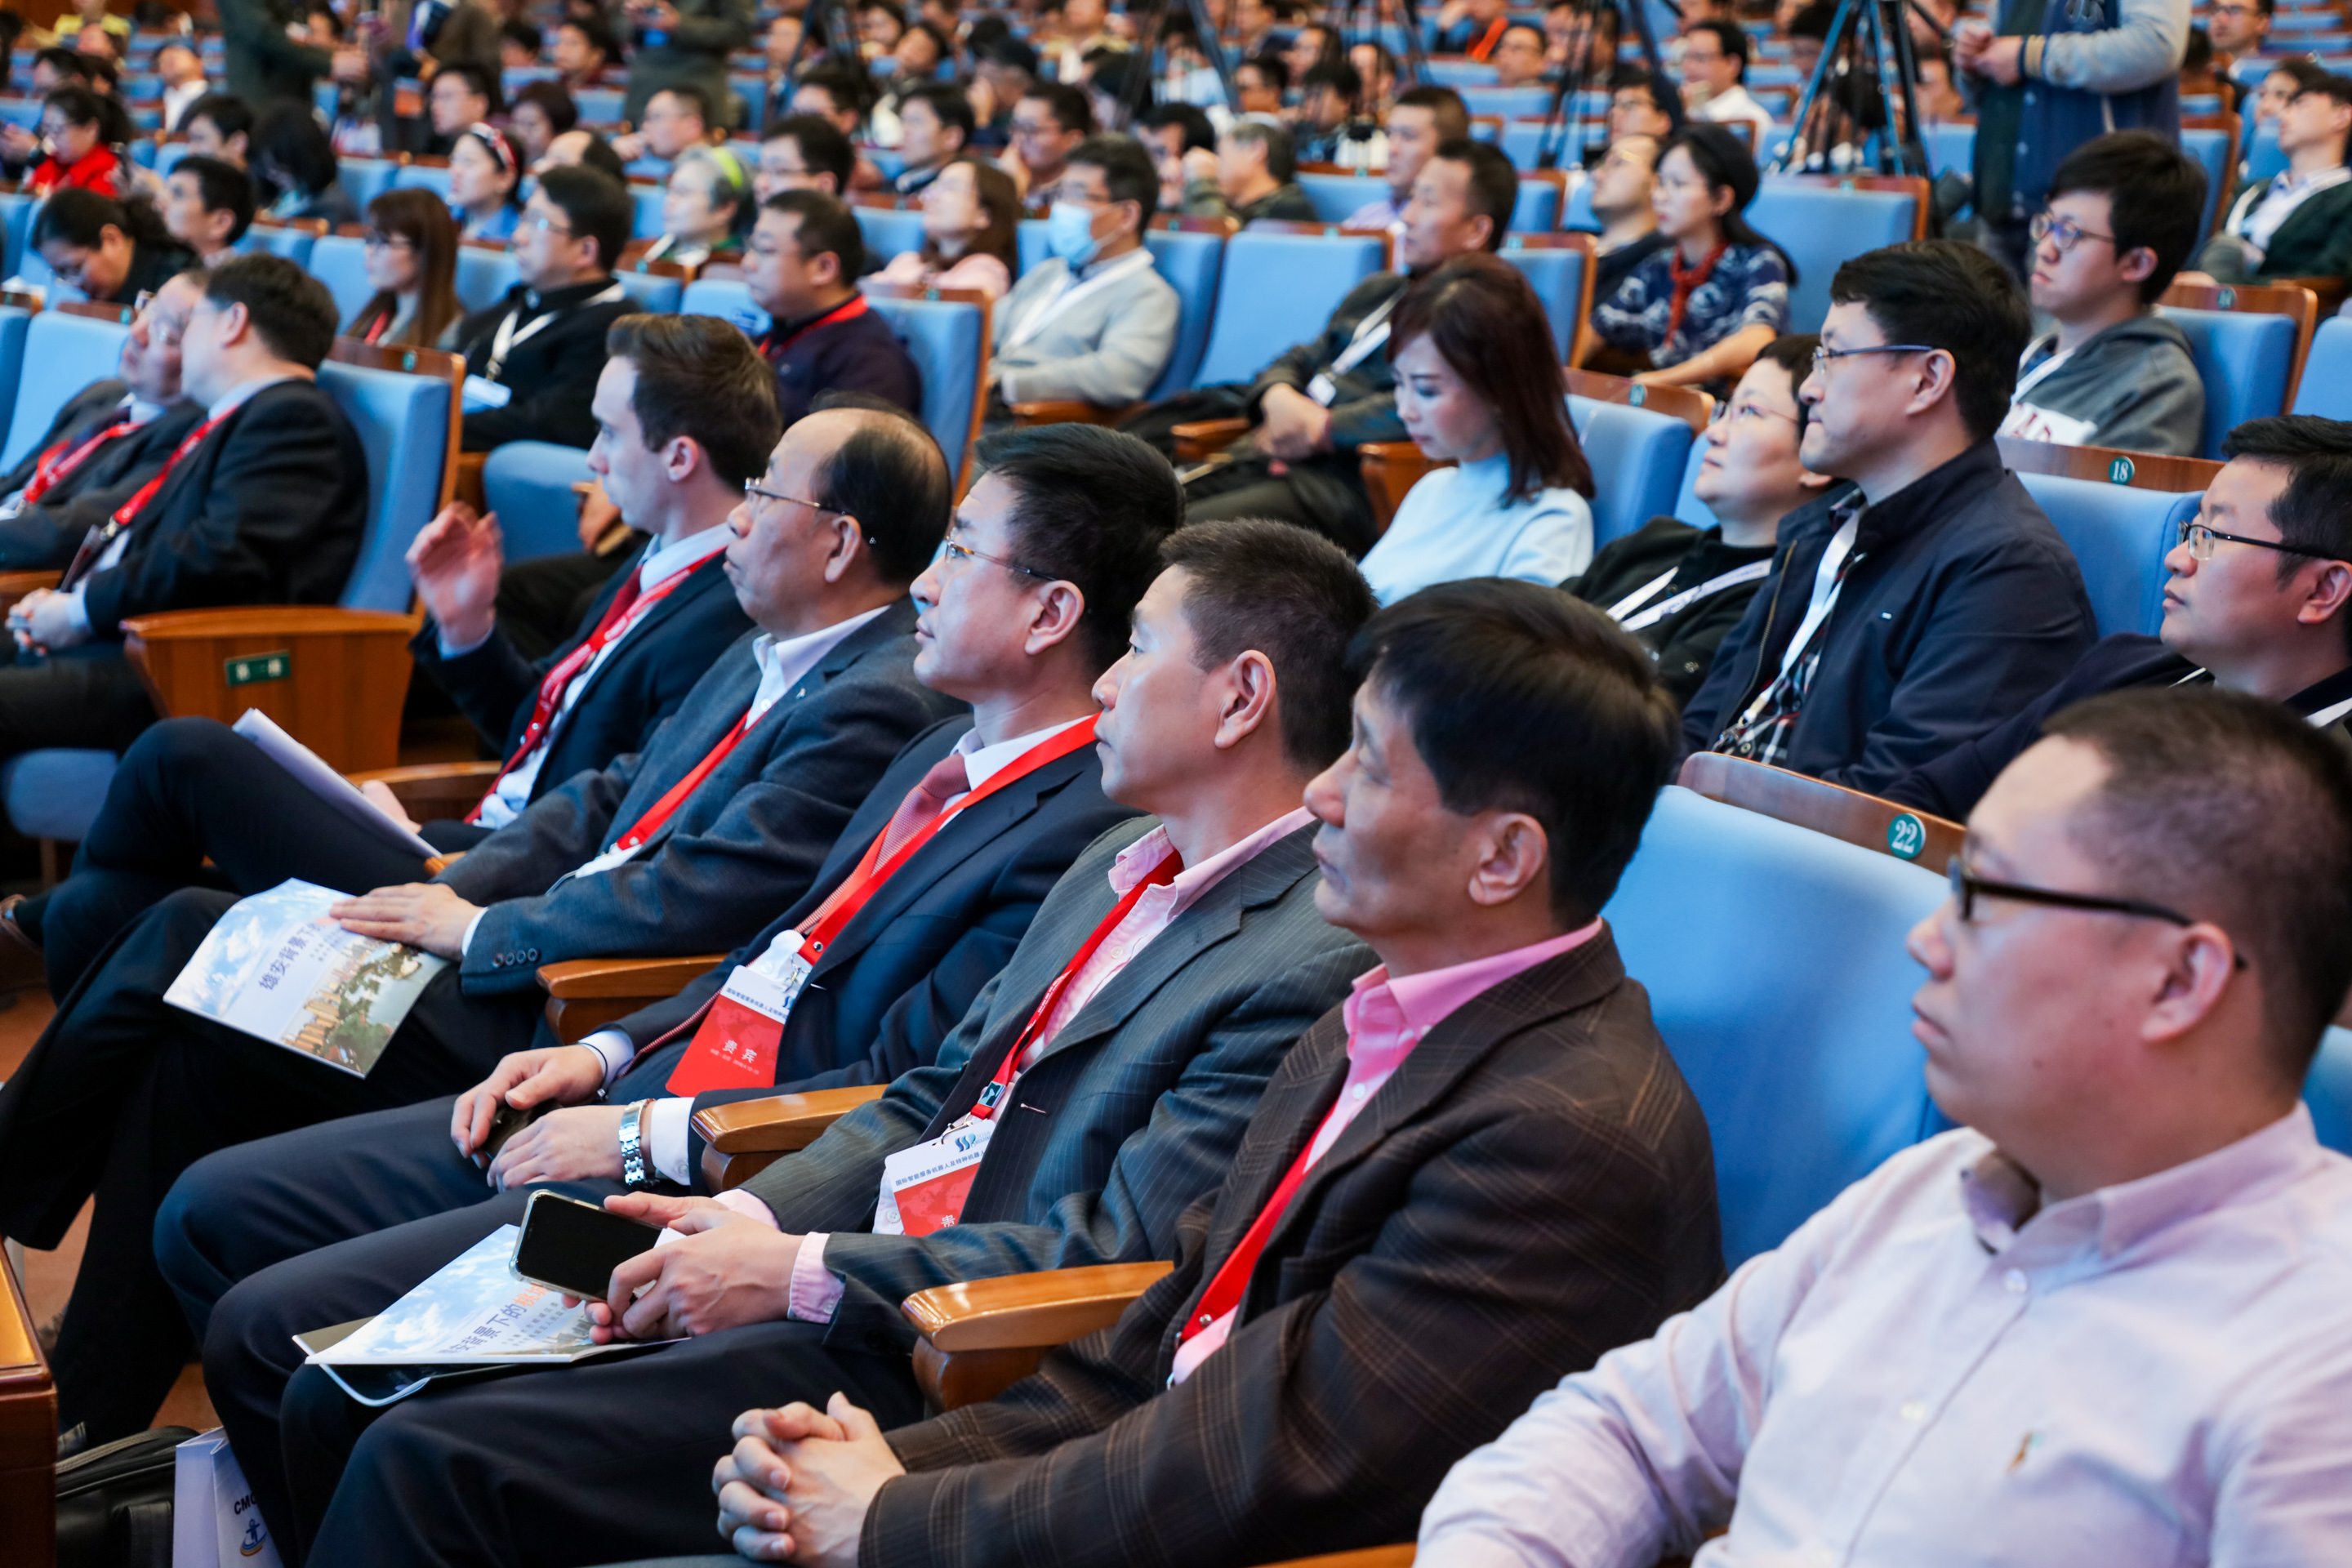 2019第二届服务机器人及特种机器人峰会即将在京召开